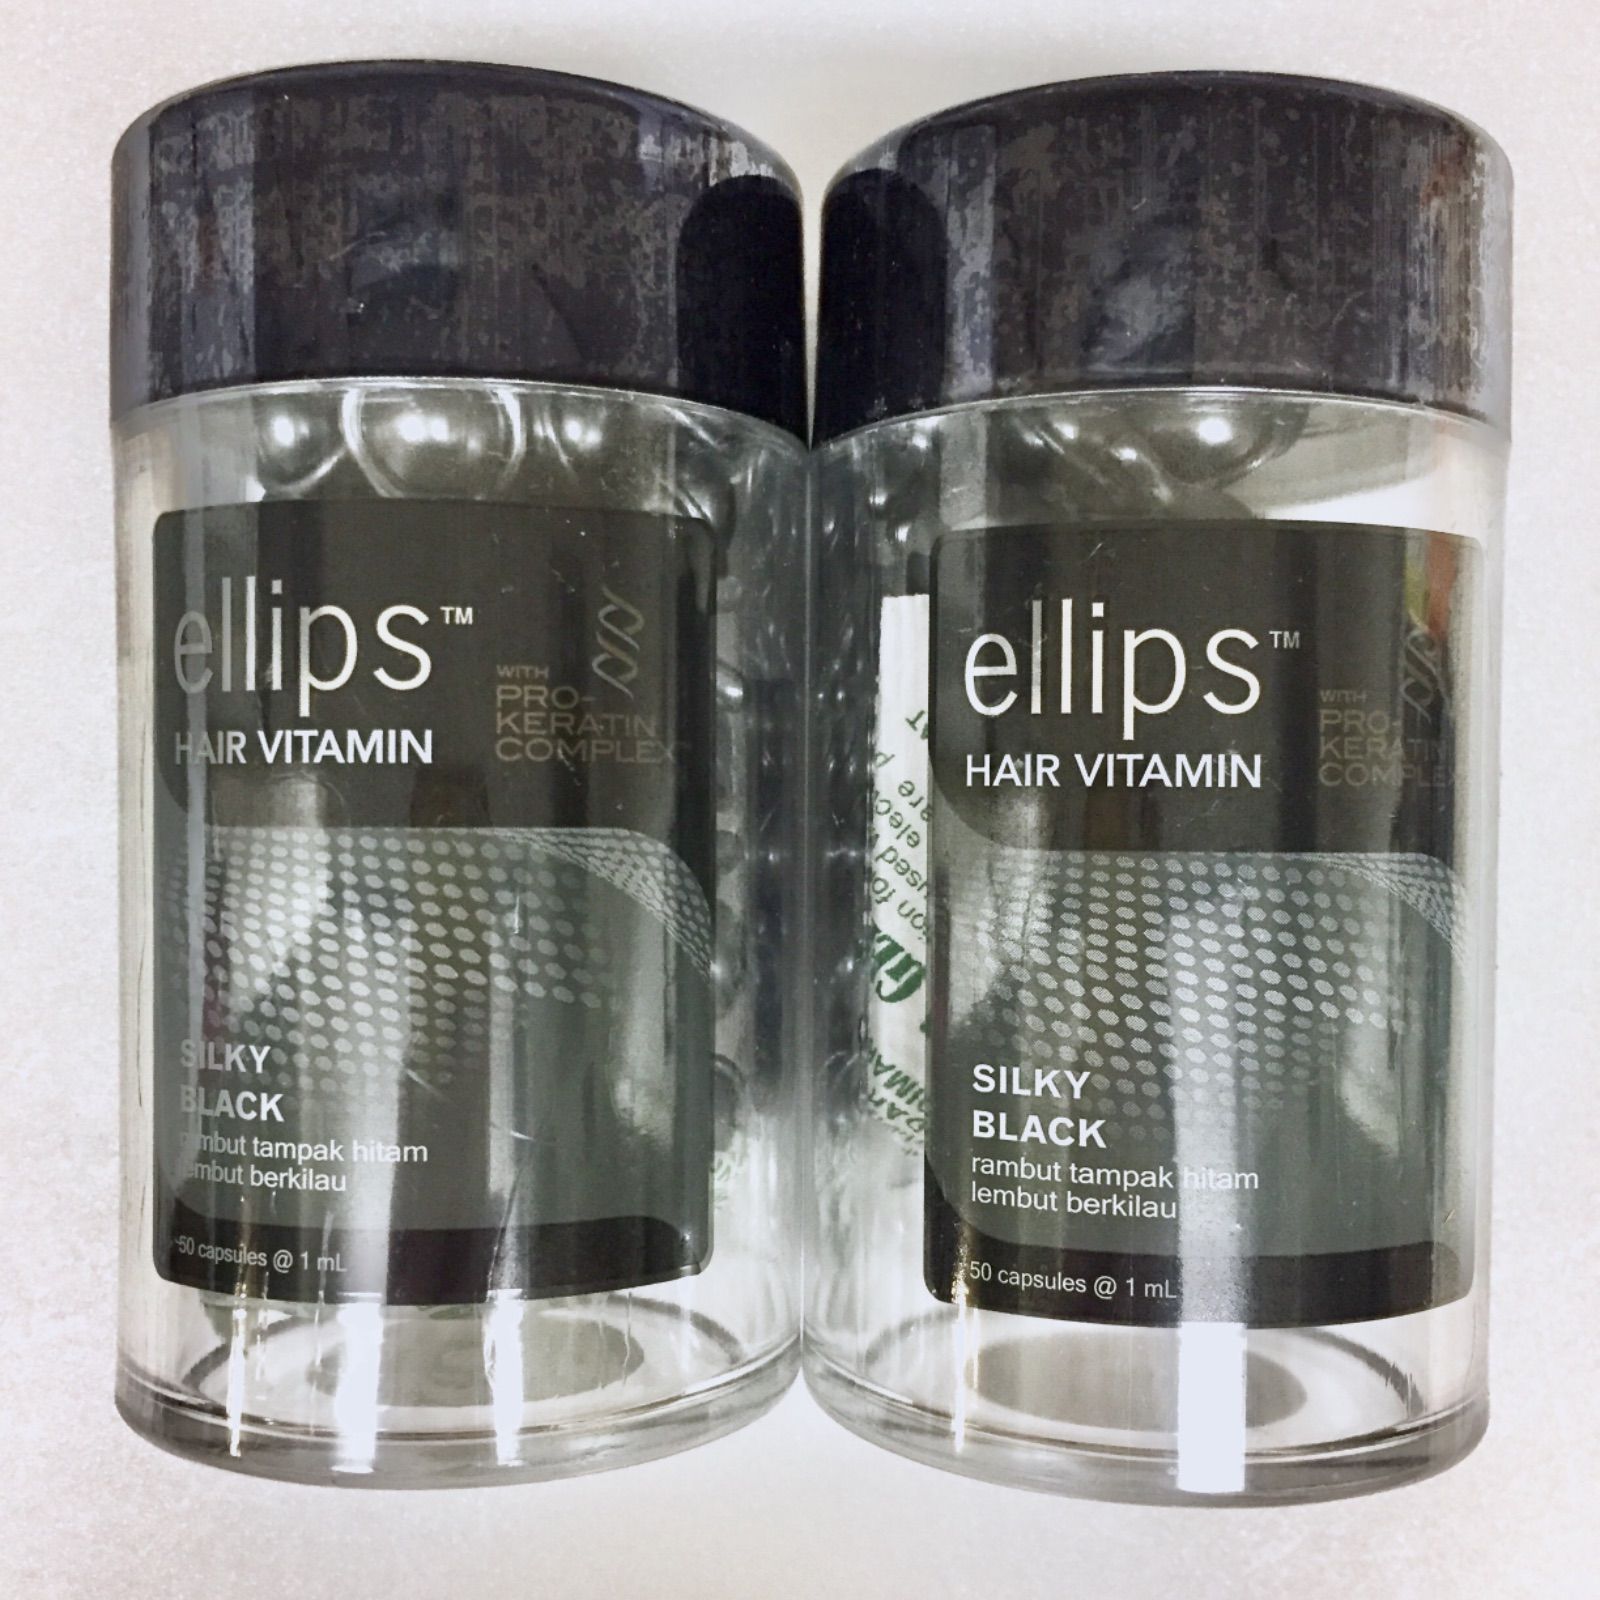 ellips エリップス ヘアトリートメント『シルキーブラック』50粒 ×2個 やなごっち Shop メルカリ